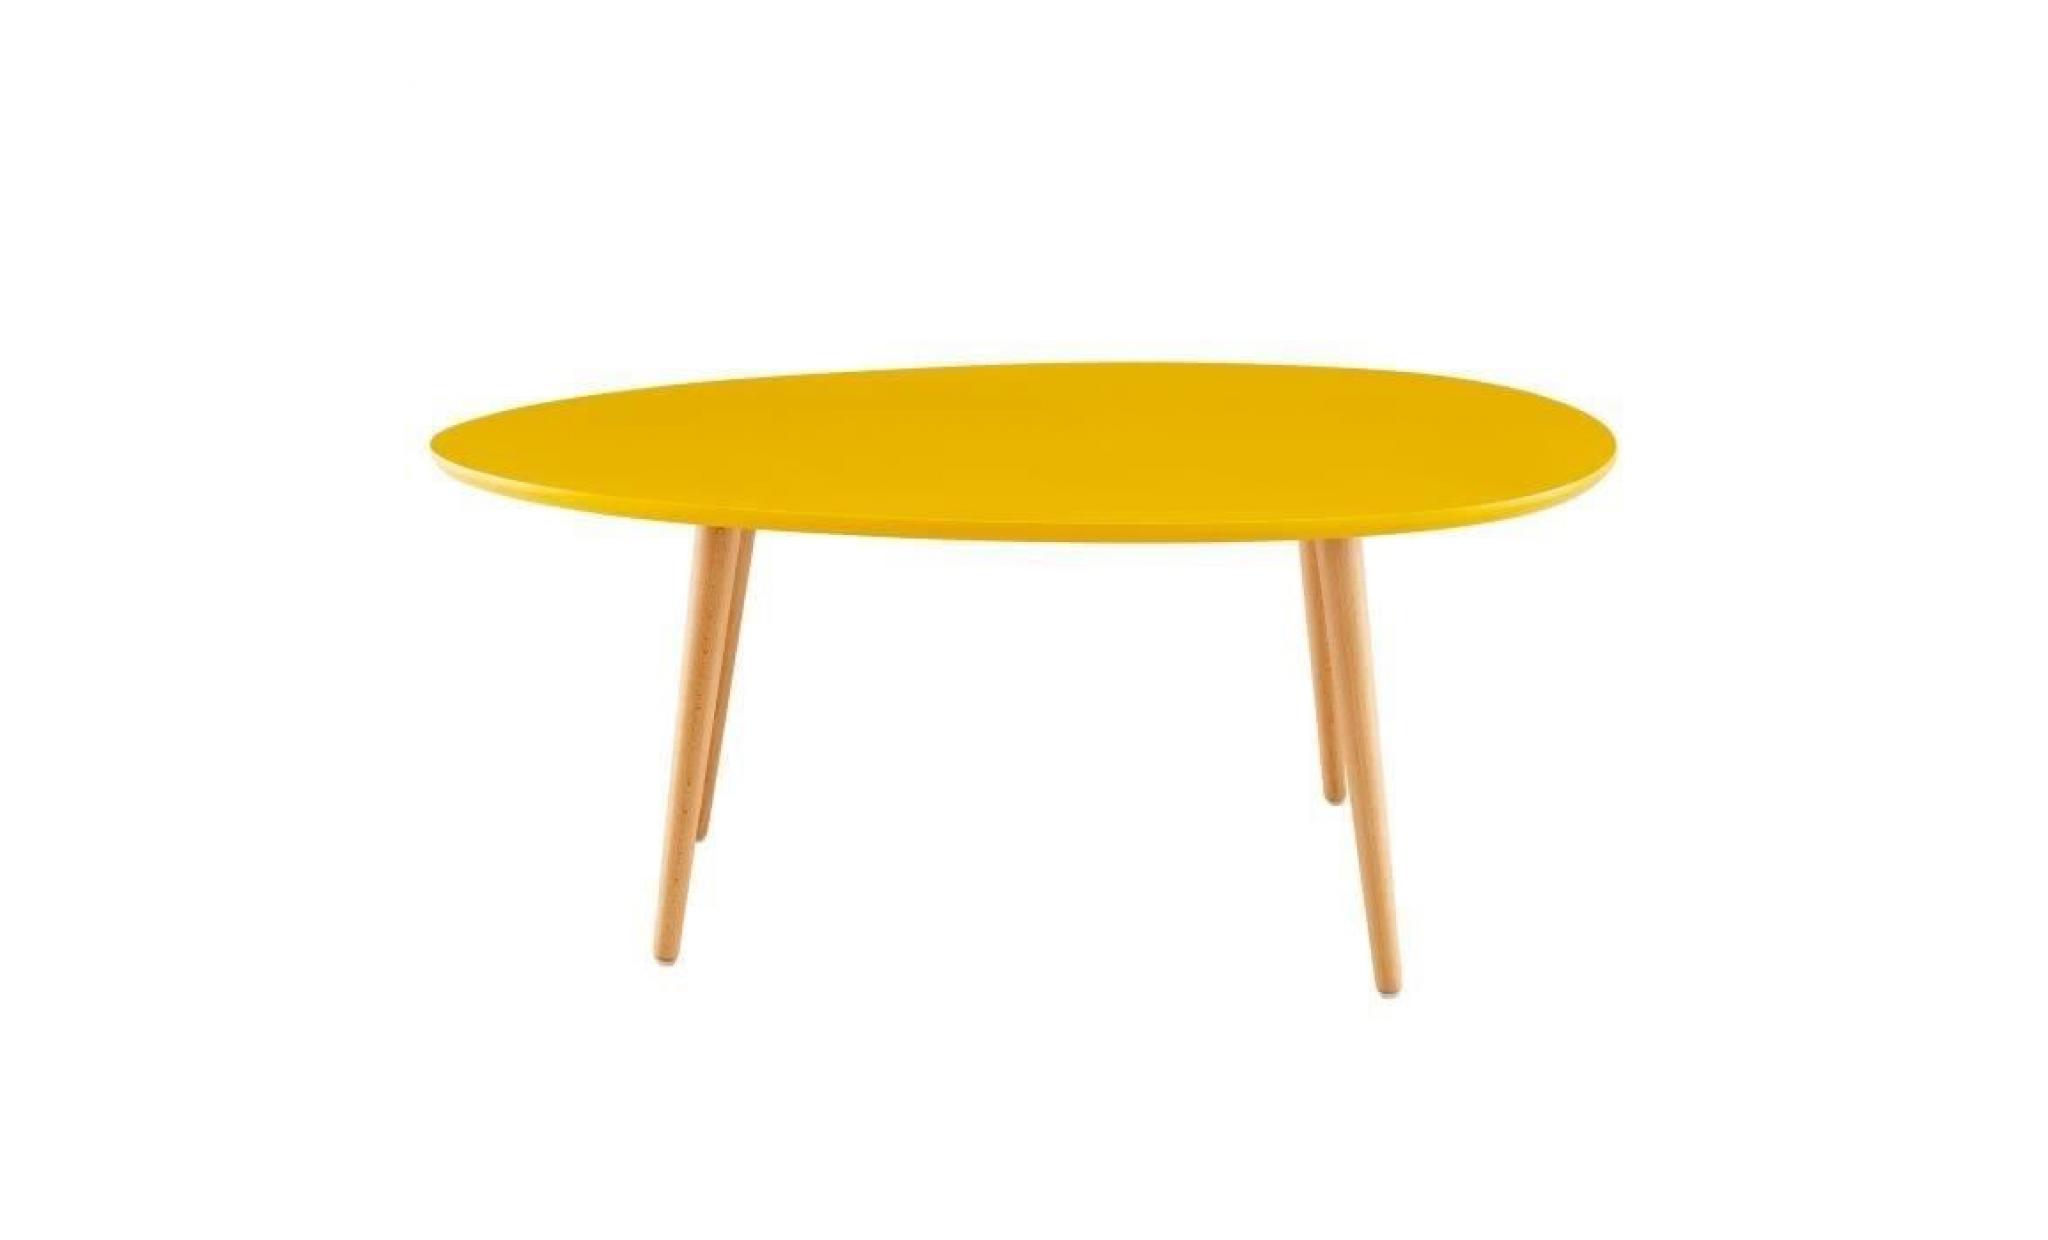 stone table basse ovale scandinave jaune moutarde laqué   l 98 x l 61 cm